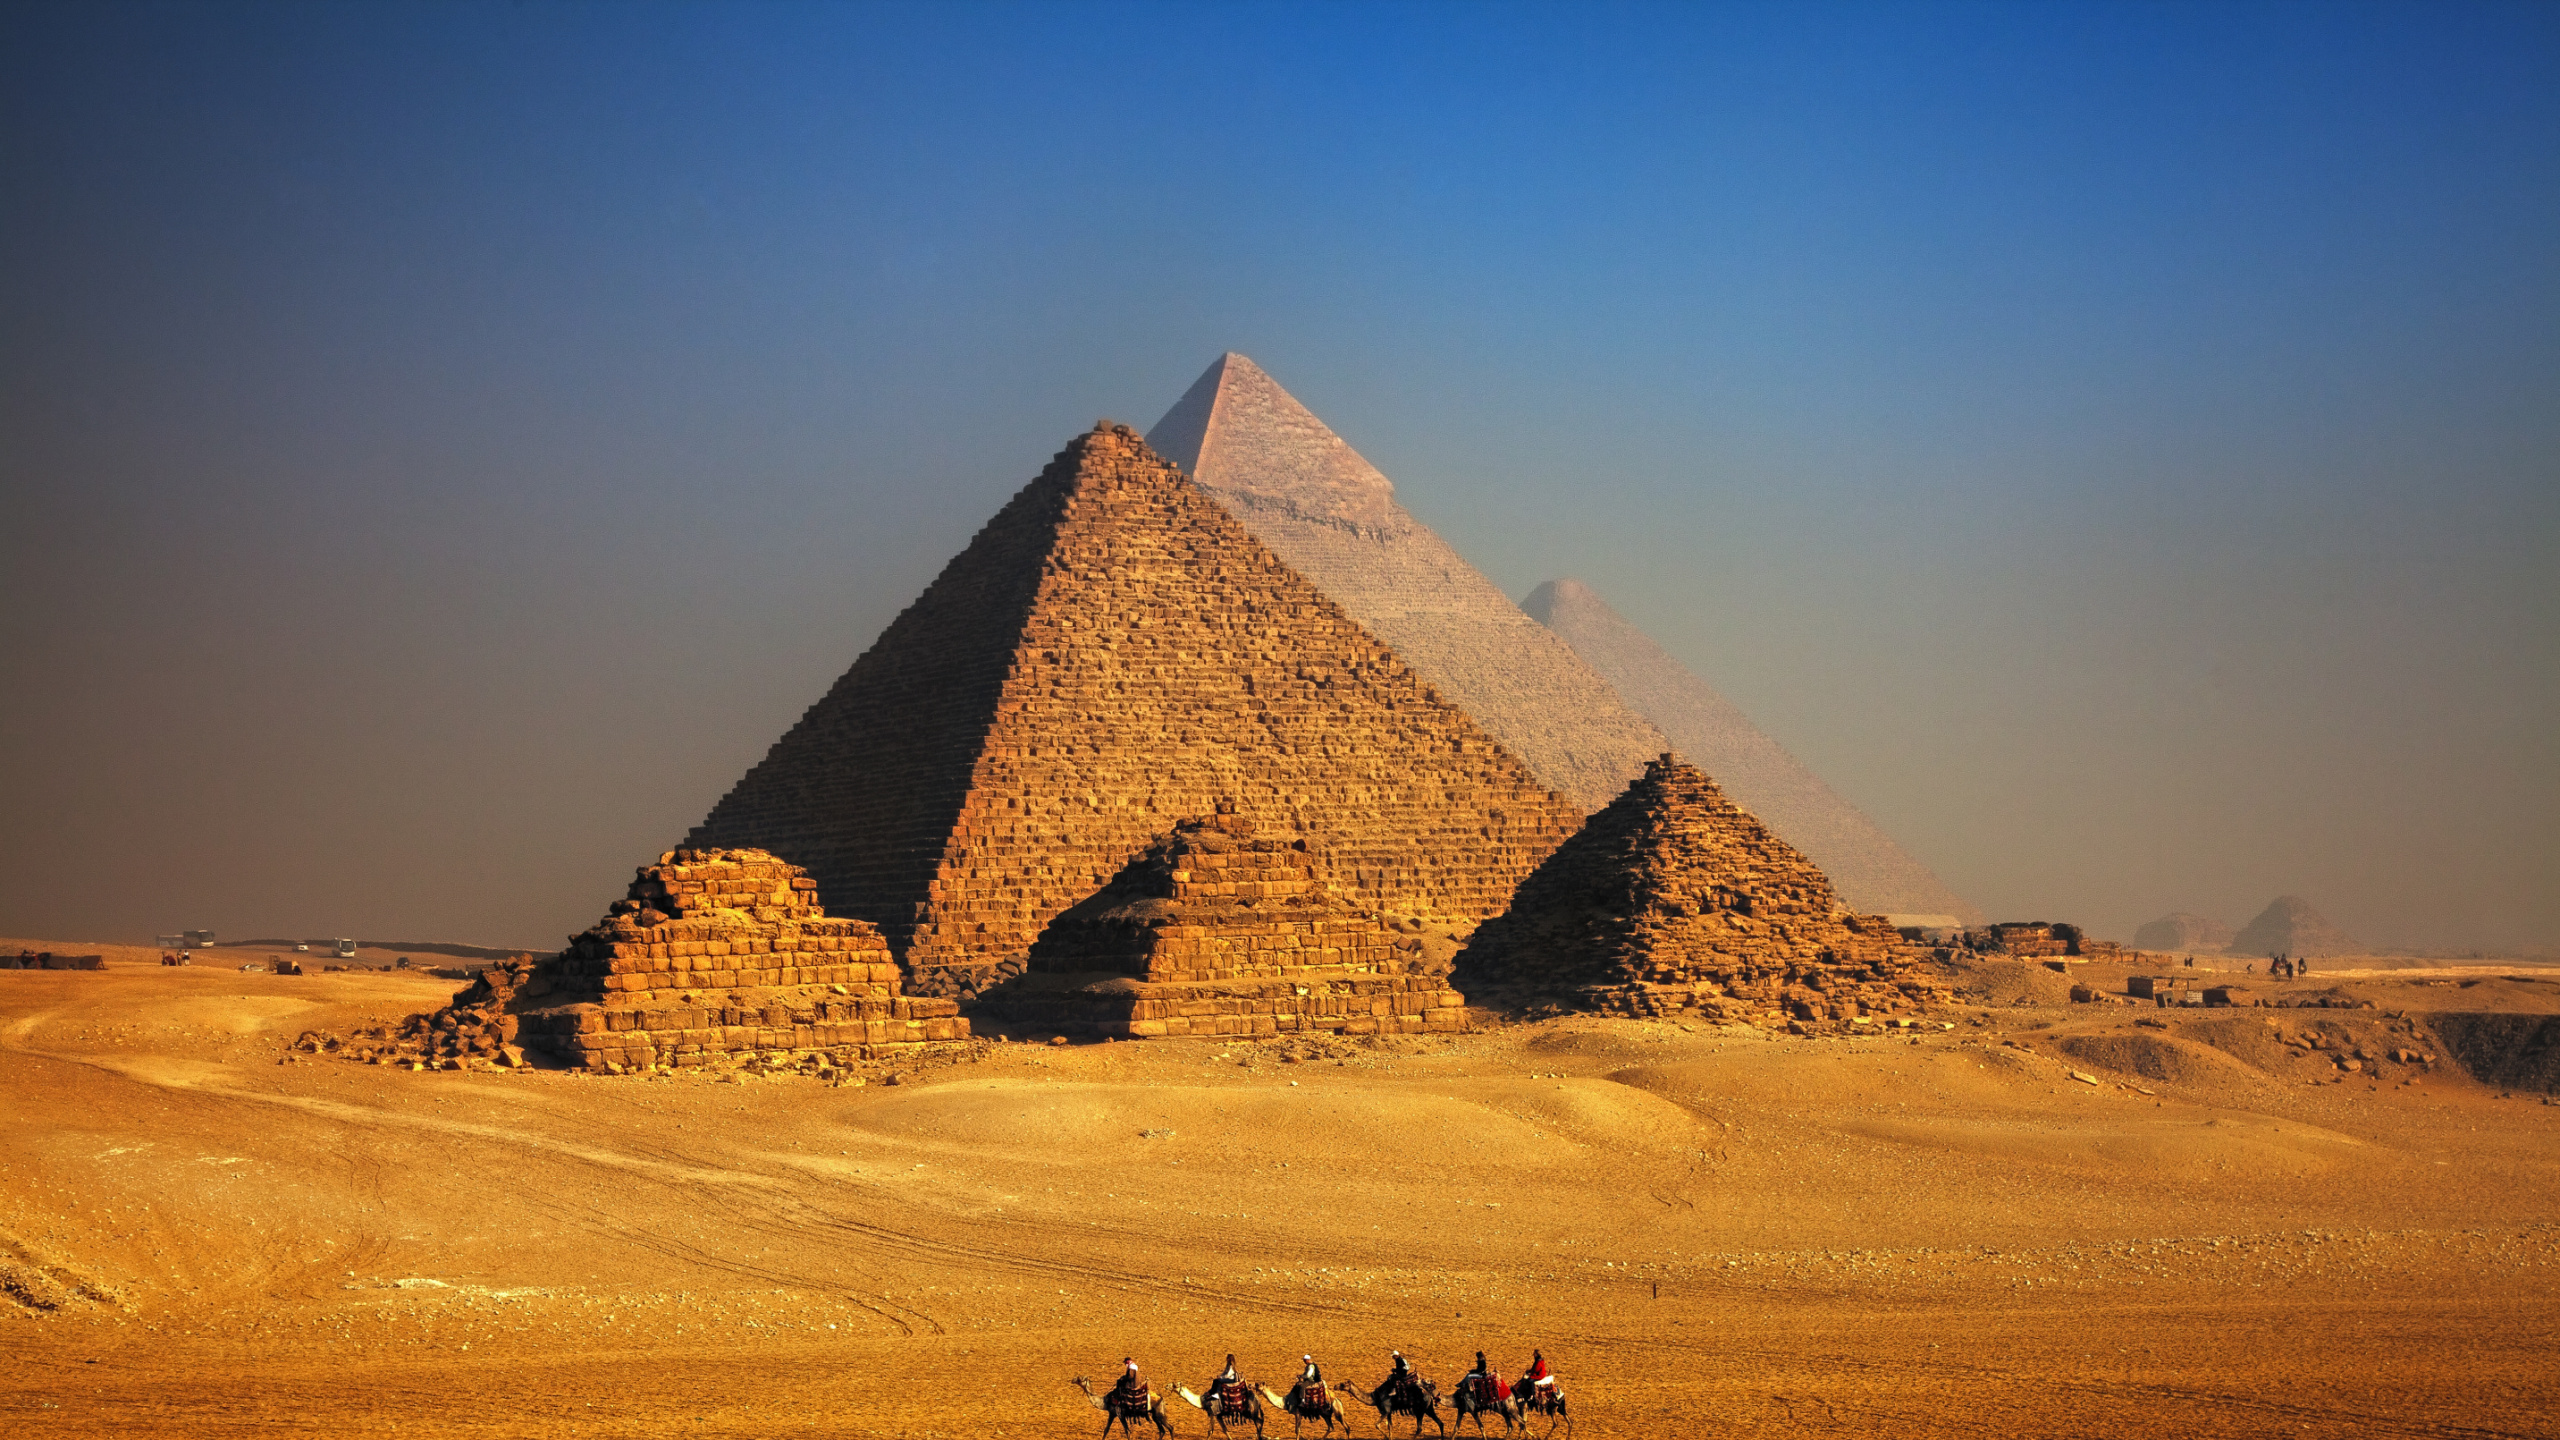 吉萨的大狮身人面像, 金字塔, 埃及金字塔, 旅游景点, 纪念碑 壁纸 2560x1440 允许